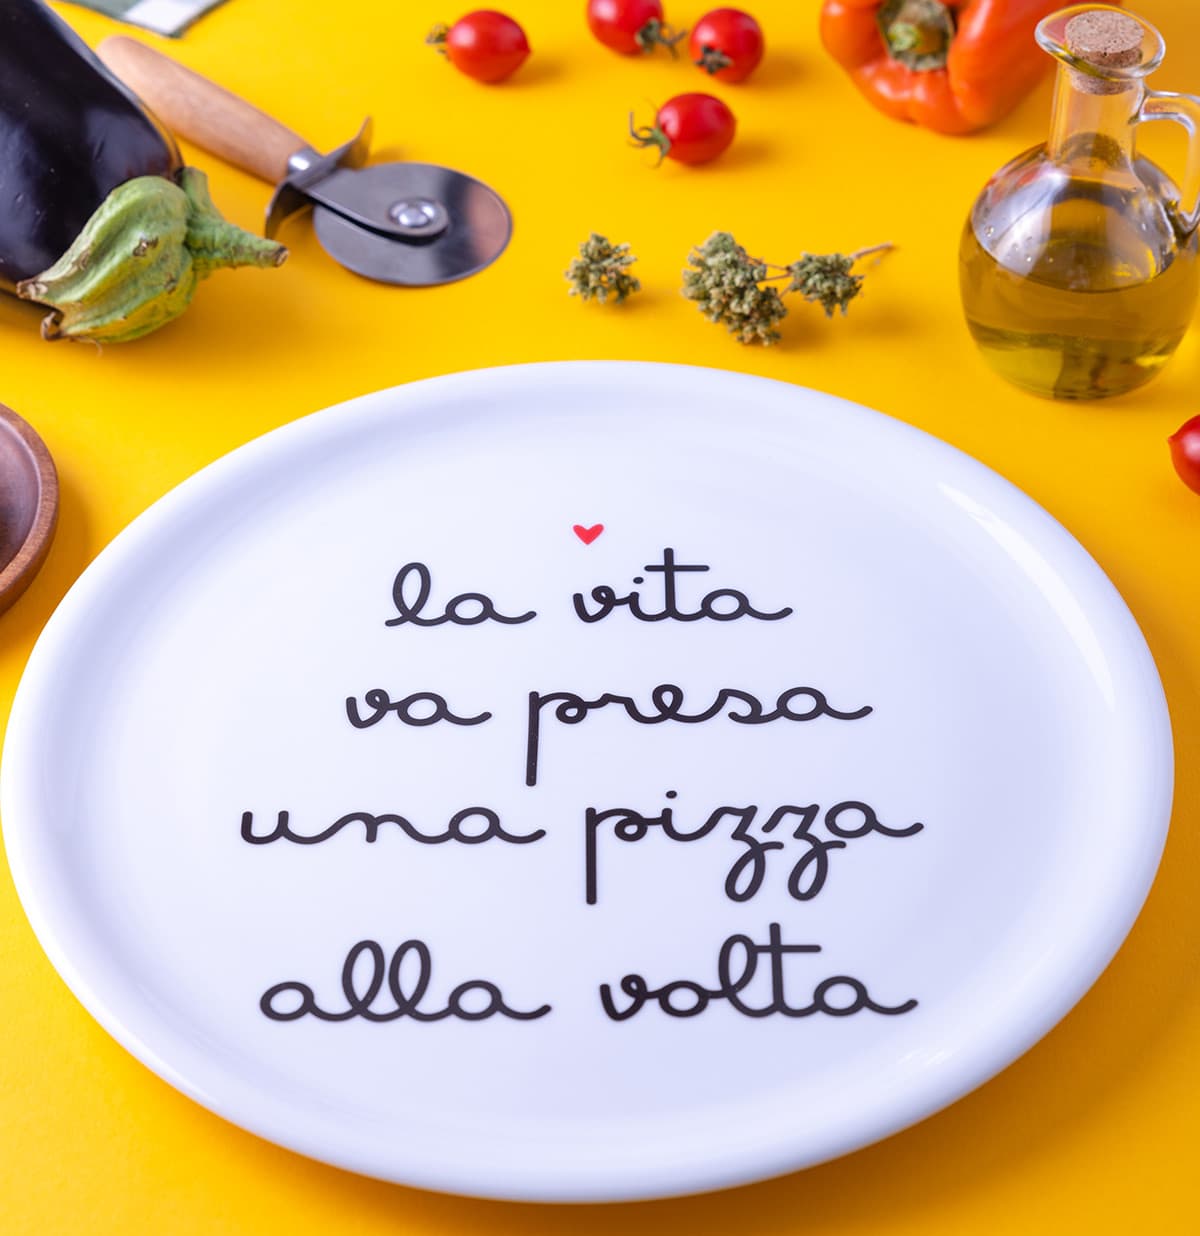 piatto_pizza_la_vita_va_presa_una_pizza_alla_volta